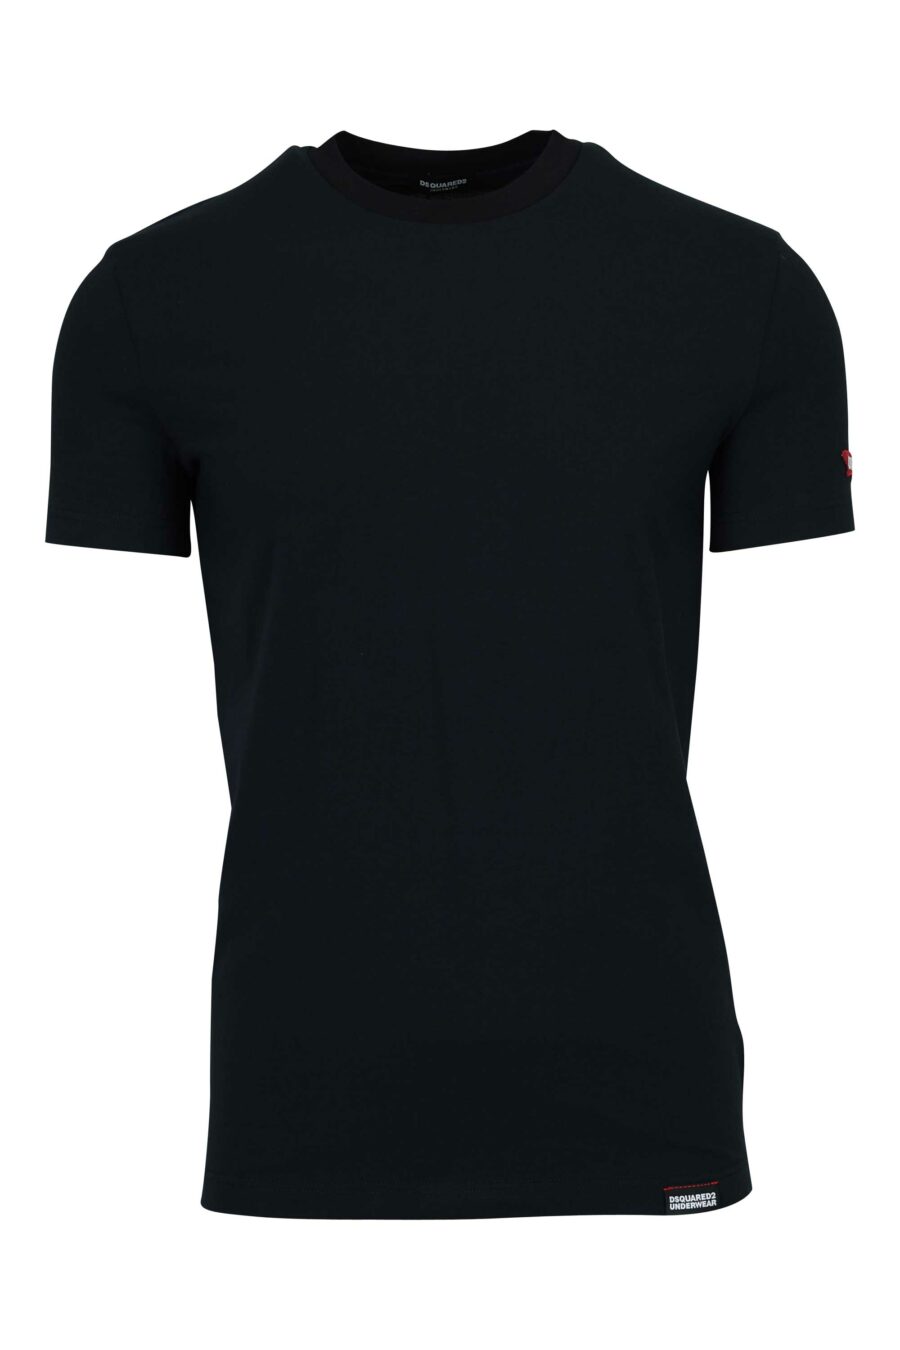 T-shirt preta com etiqueta com logótipo - 8032674811202